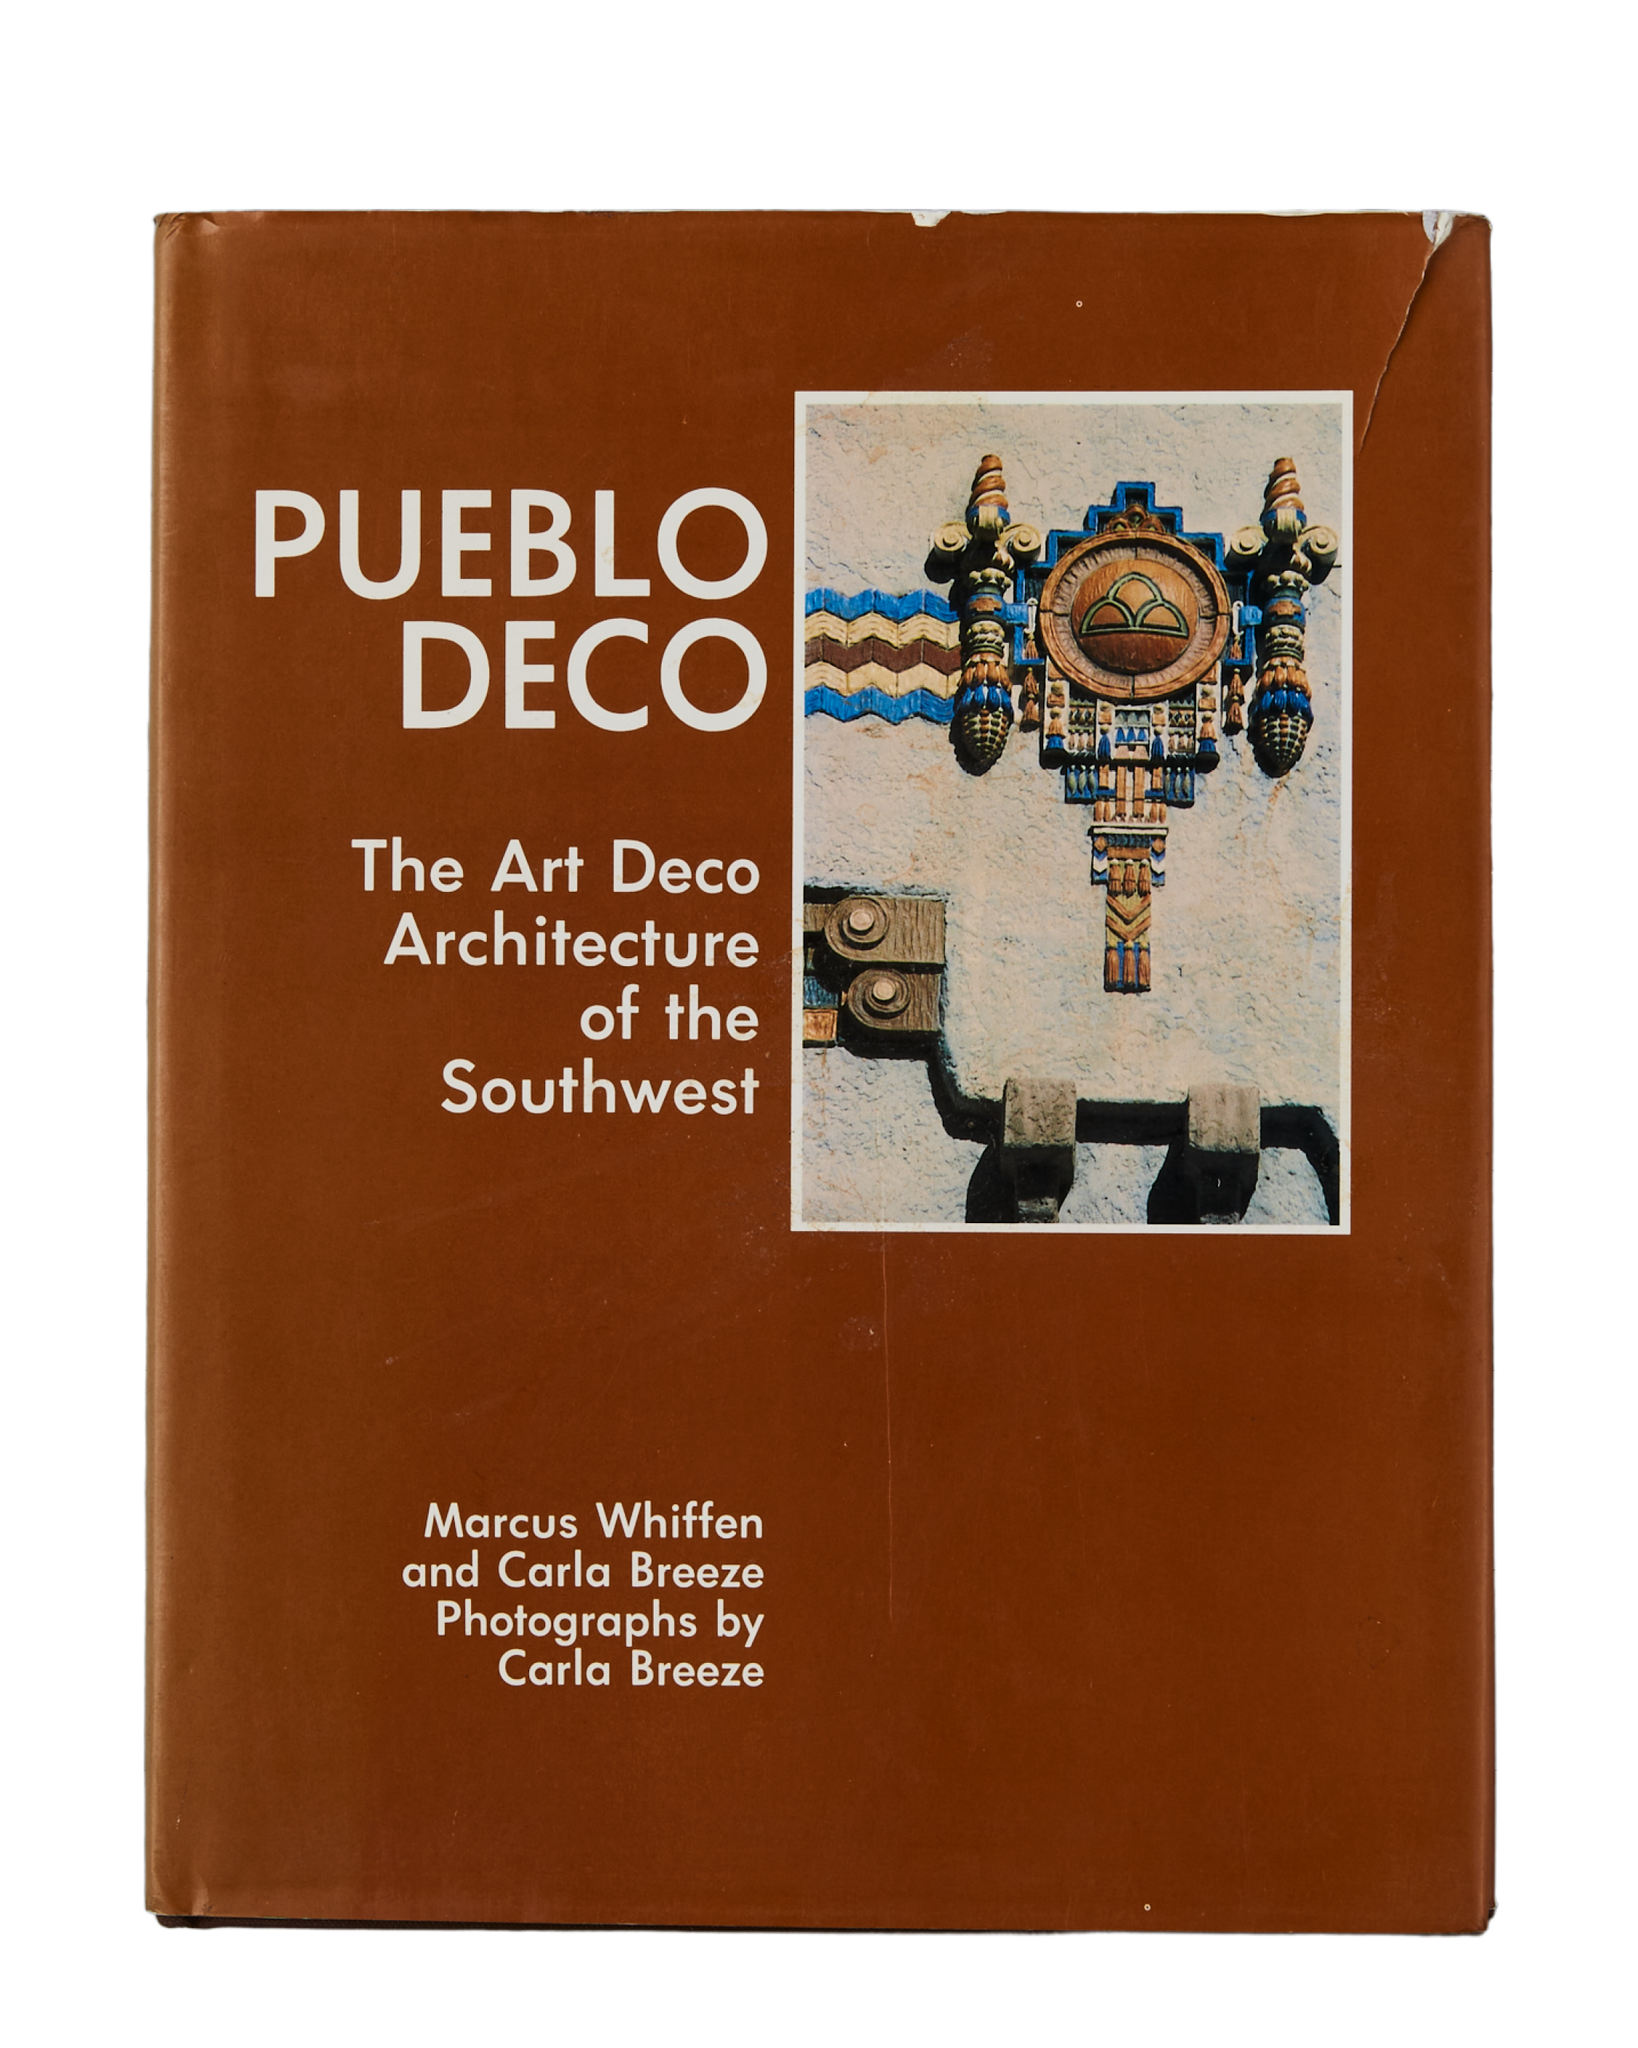 Pueblo Deco: The Art Deco Architecture of the Southwest